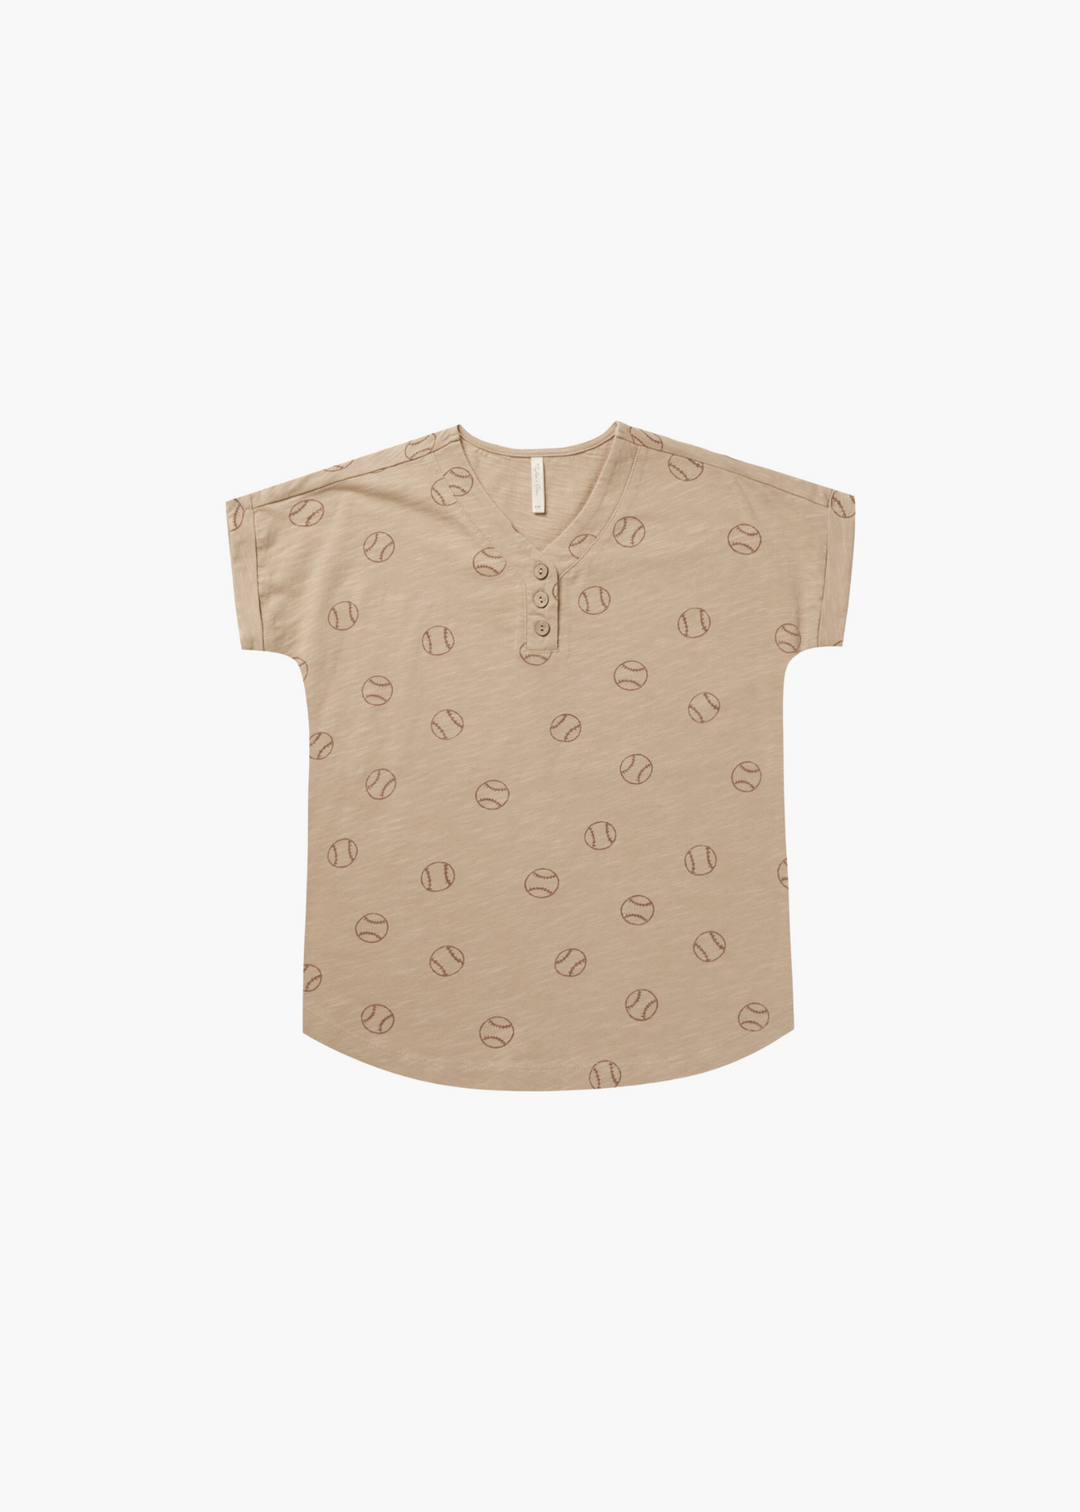 henley shirt dress || baseball - FINAL SALE